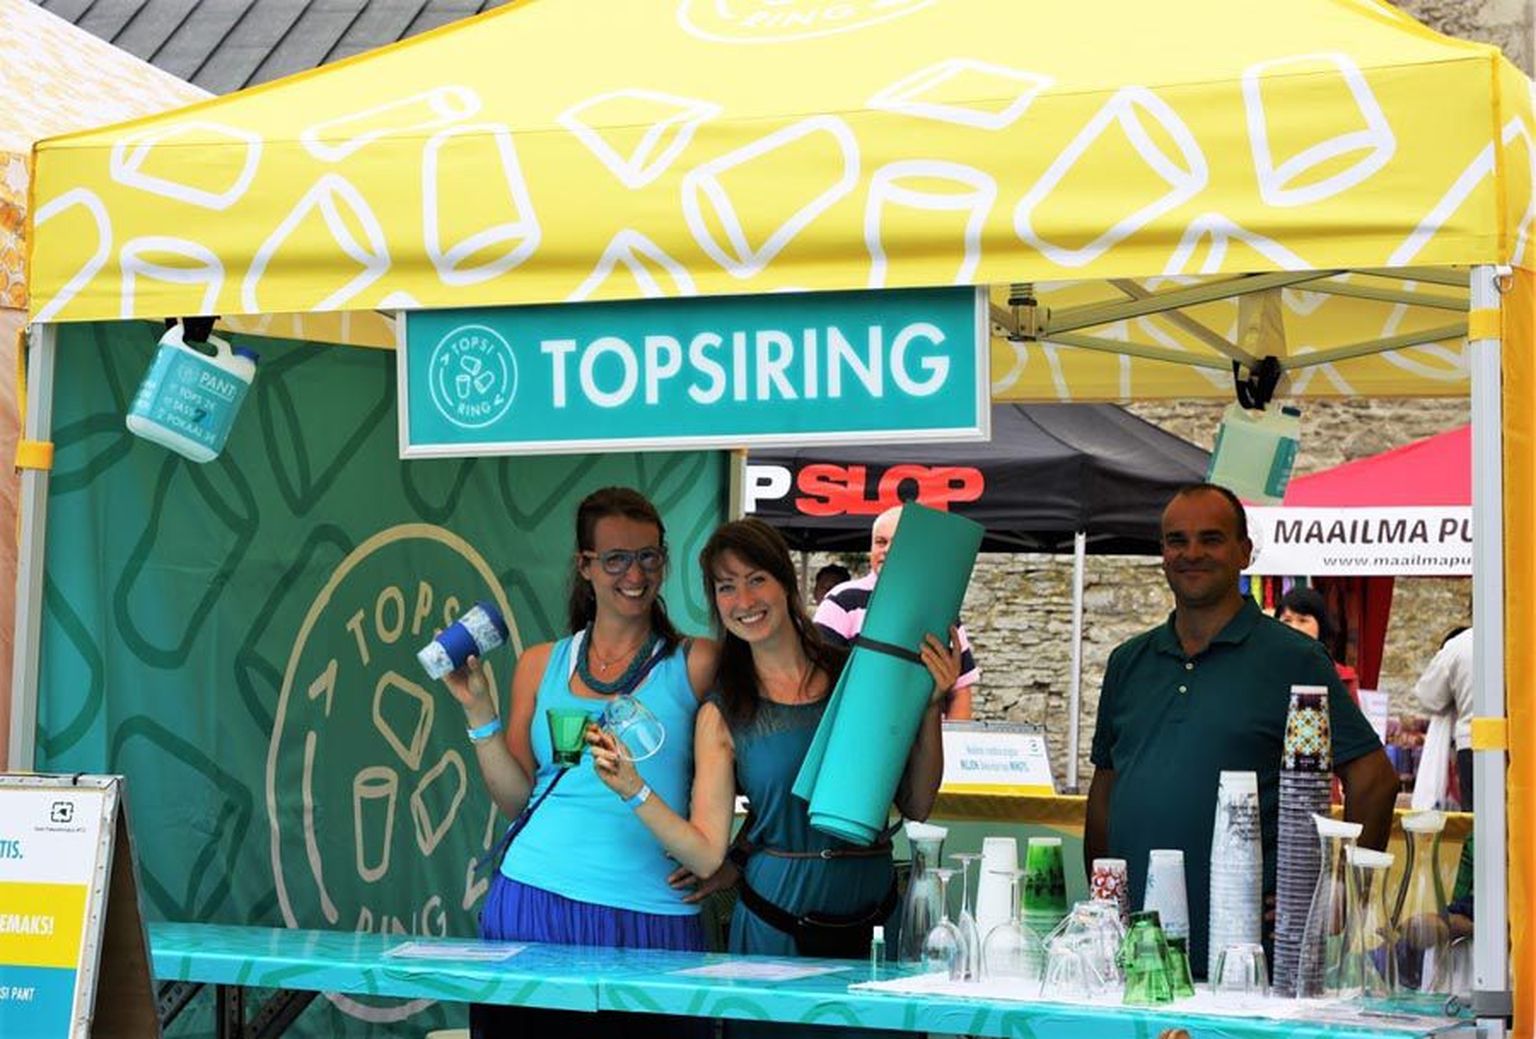 Esimest korda sai osta endale joogi korduvkasutatavasse Topsiringi tassi möödunud nädalavahetusel Haapsalus aset leidnud viiendal joogafestivalil. 
TOPSIRING